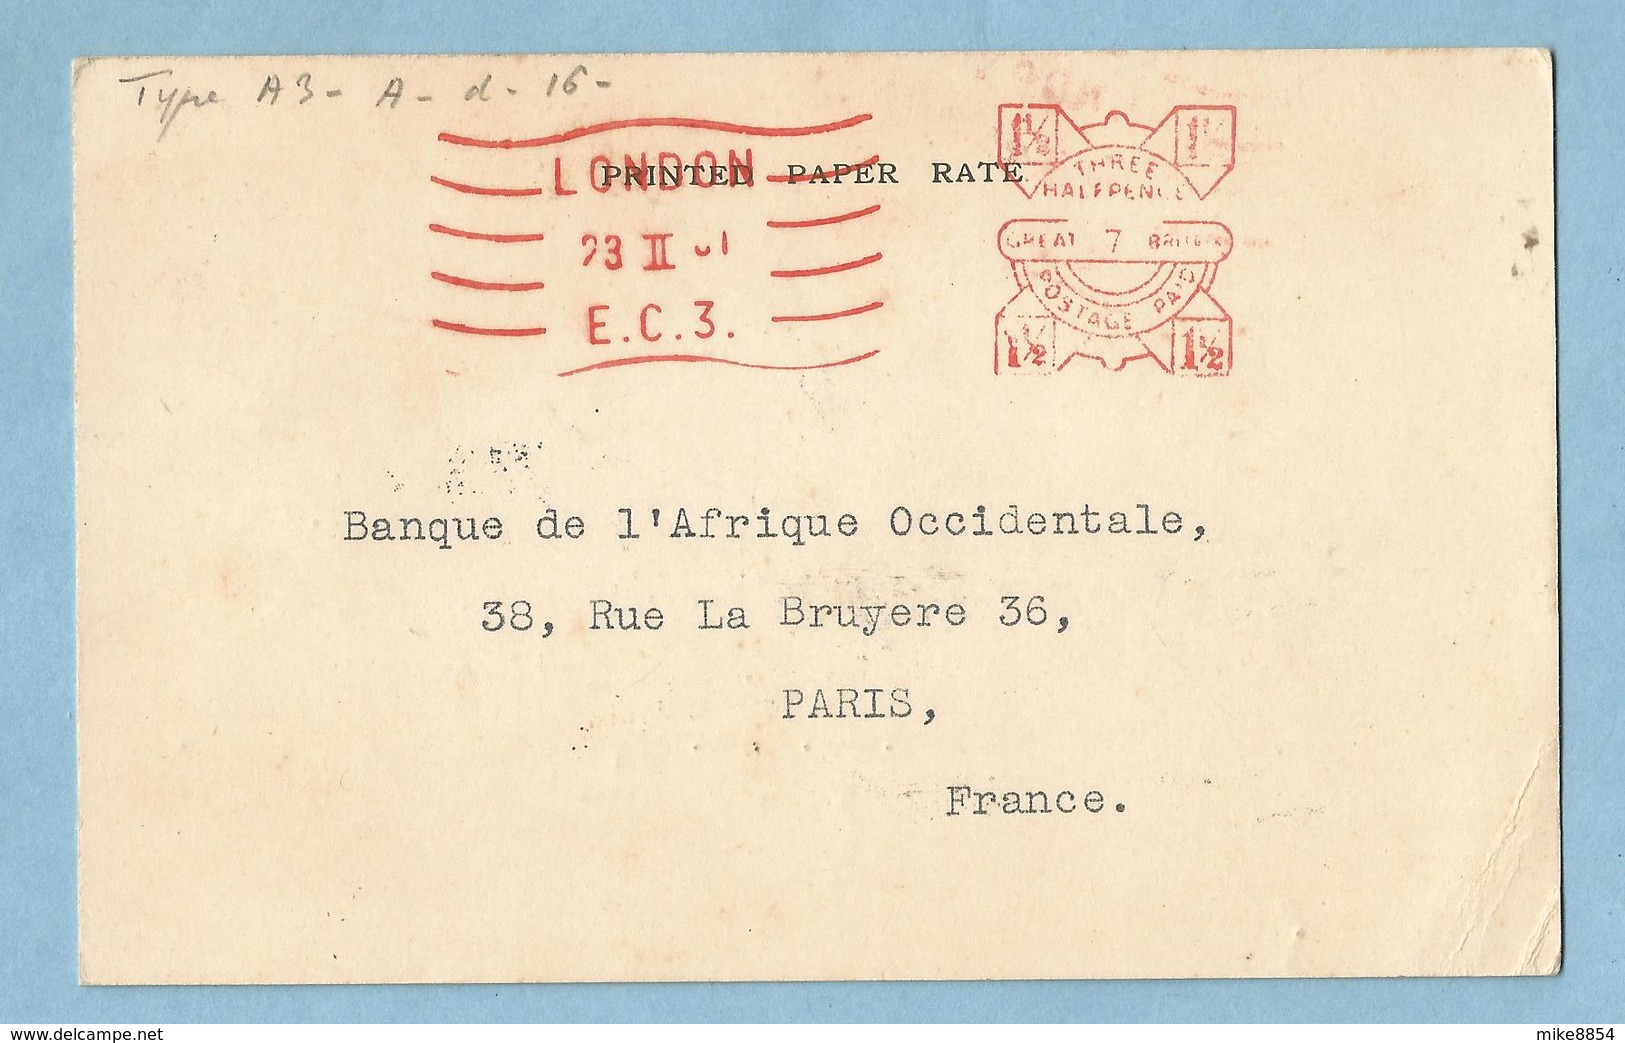 A052  -  LLOYDS  BANK LIMITED  - 23rd February 1931   LONDON  -   Banque De L'Afrique Occidentale  PARIS  +++++ - Royaume-Uni